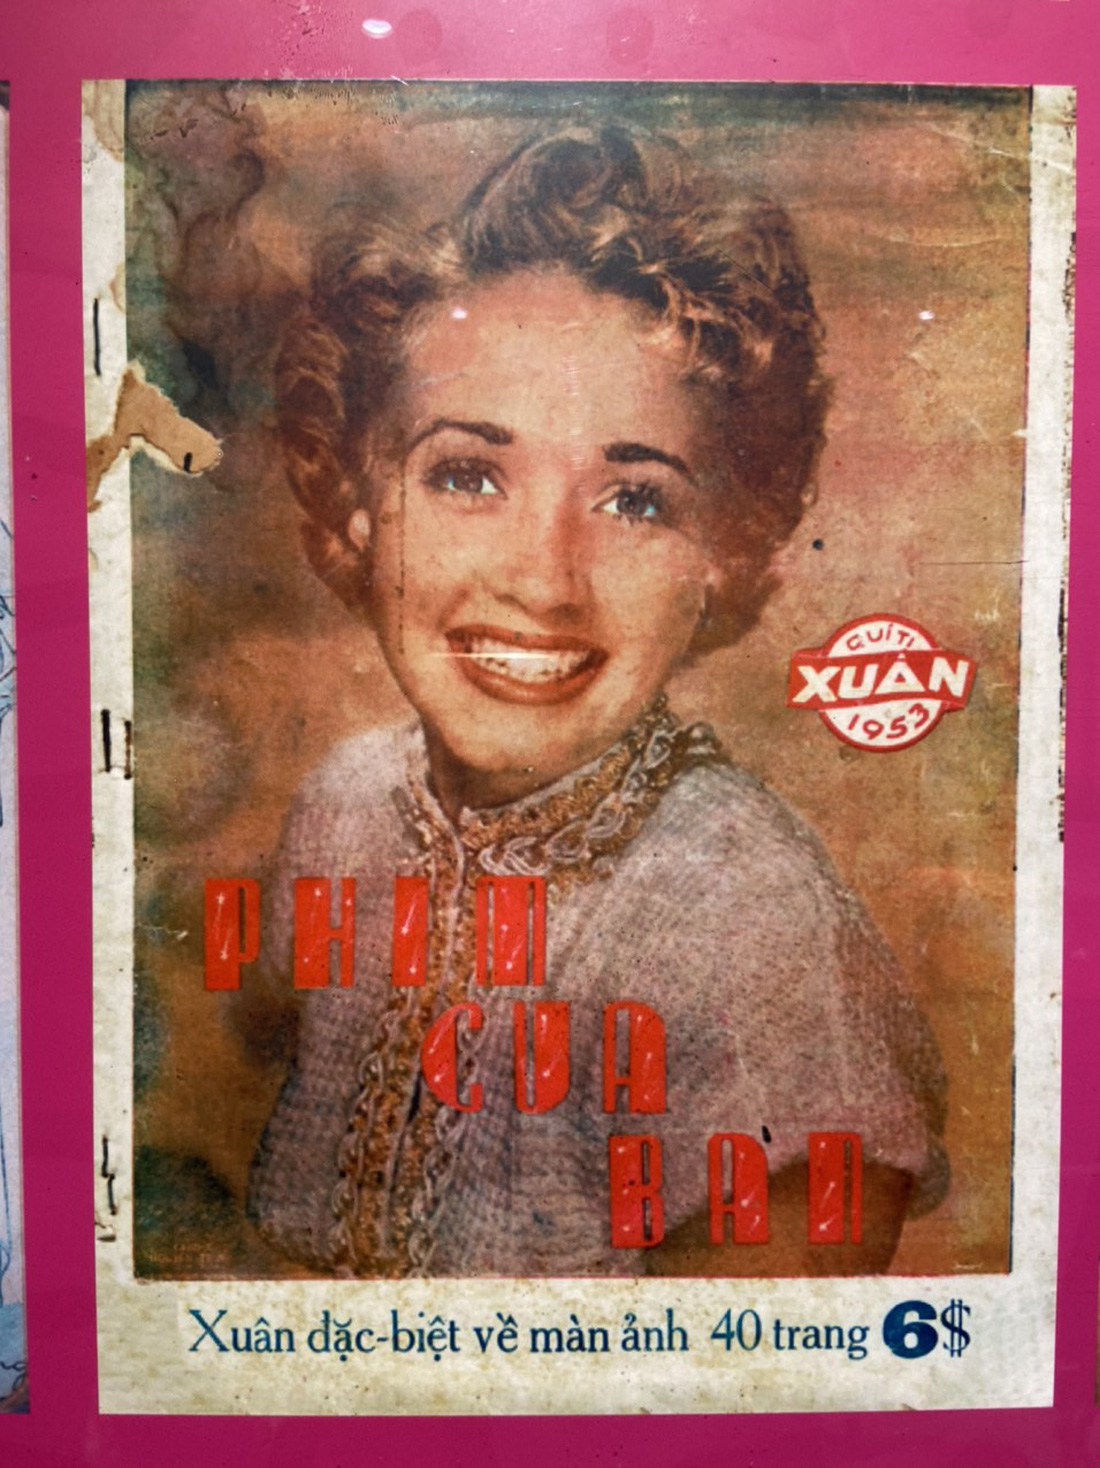 Ngắm tranh Nguyễn Gia Trí và hình Marilyn Monroe trên bìa báo Tết trước 1954 - Ảnh 4.